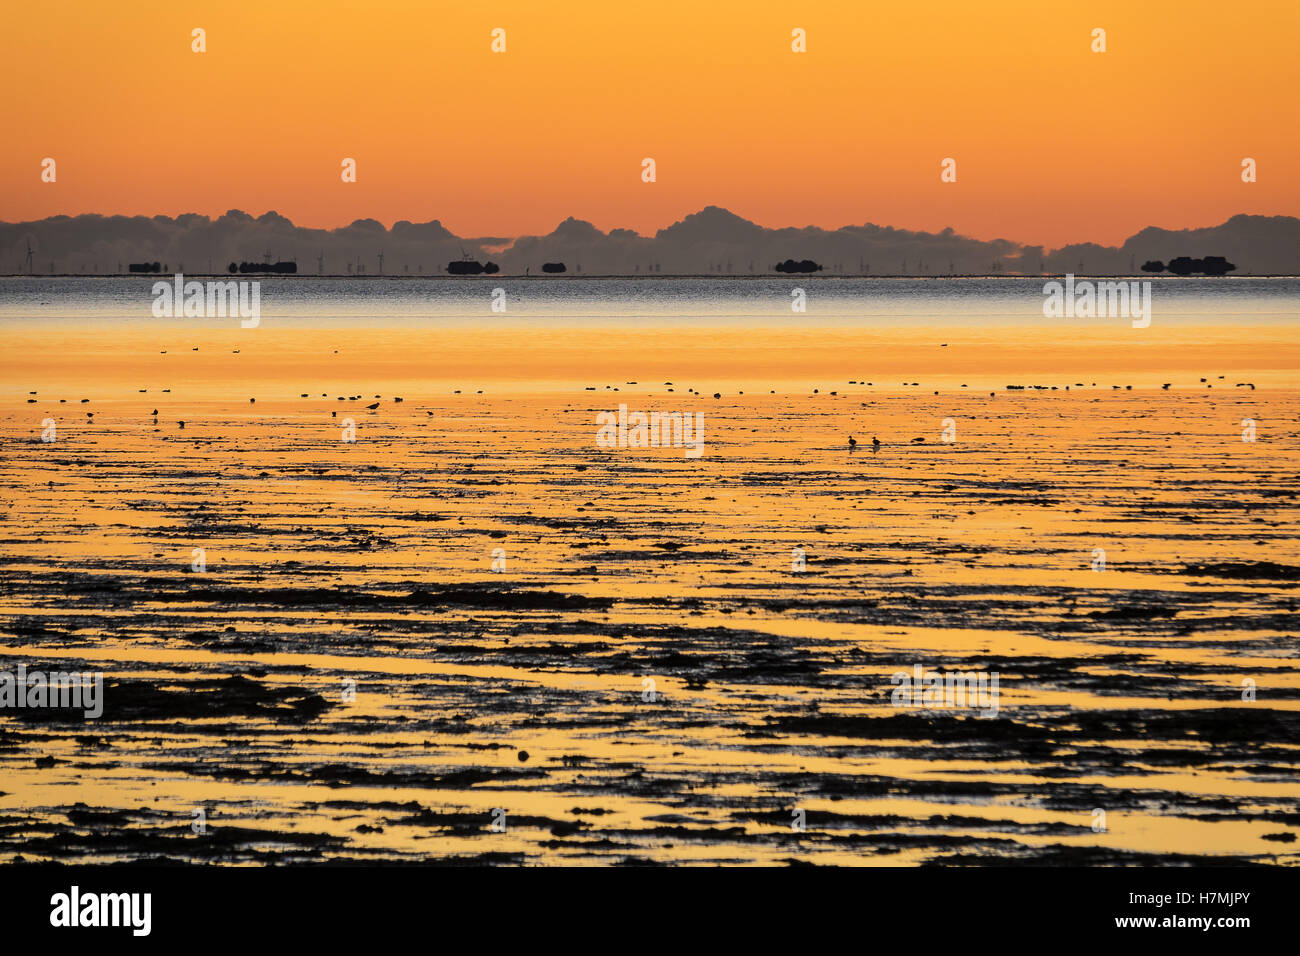 Sunrise on the North Sea coast on the island Amrum, Germany Stock Photo